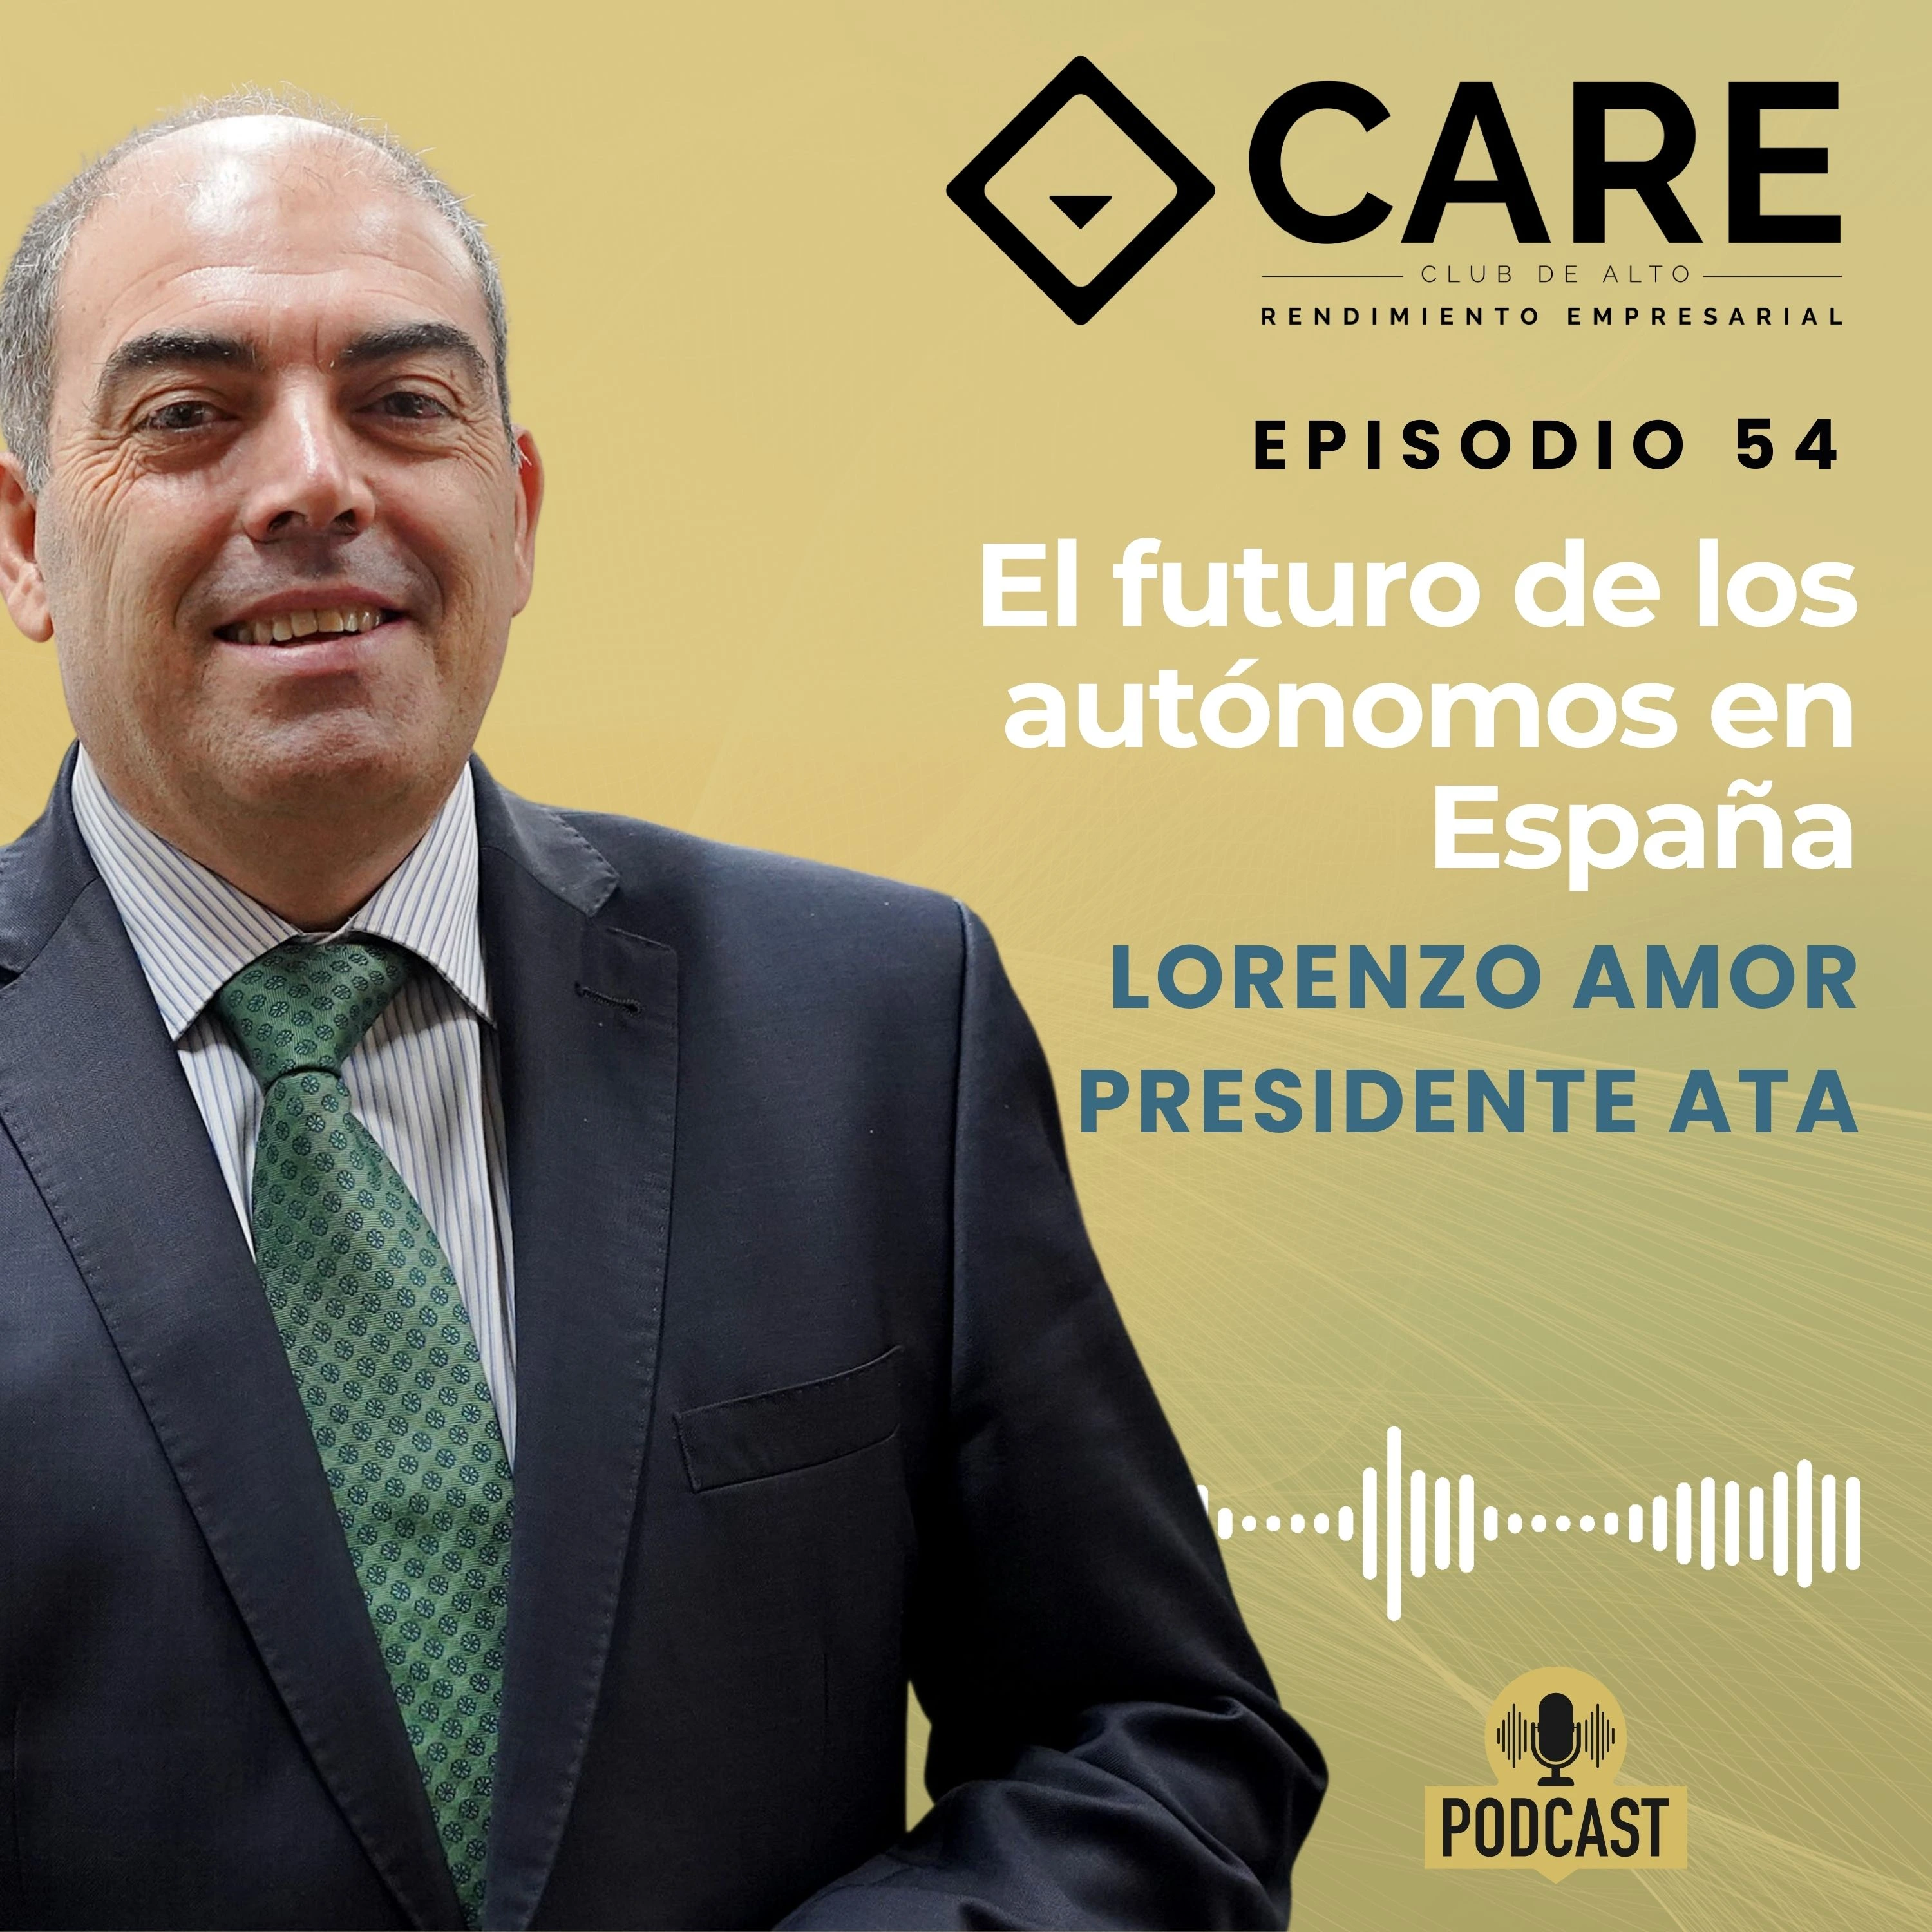 Episodio 54 - El futuro de los autónomos en España, con Lorenzo Amor - Club de Alto Rendimiento Empresarial